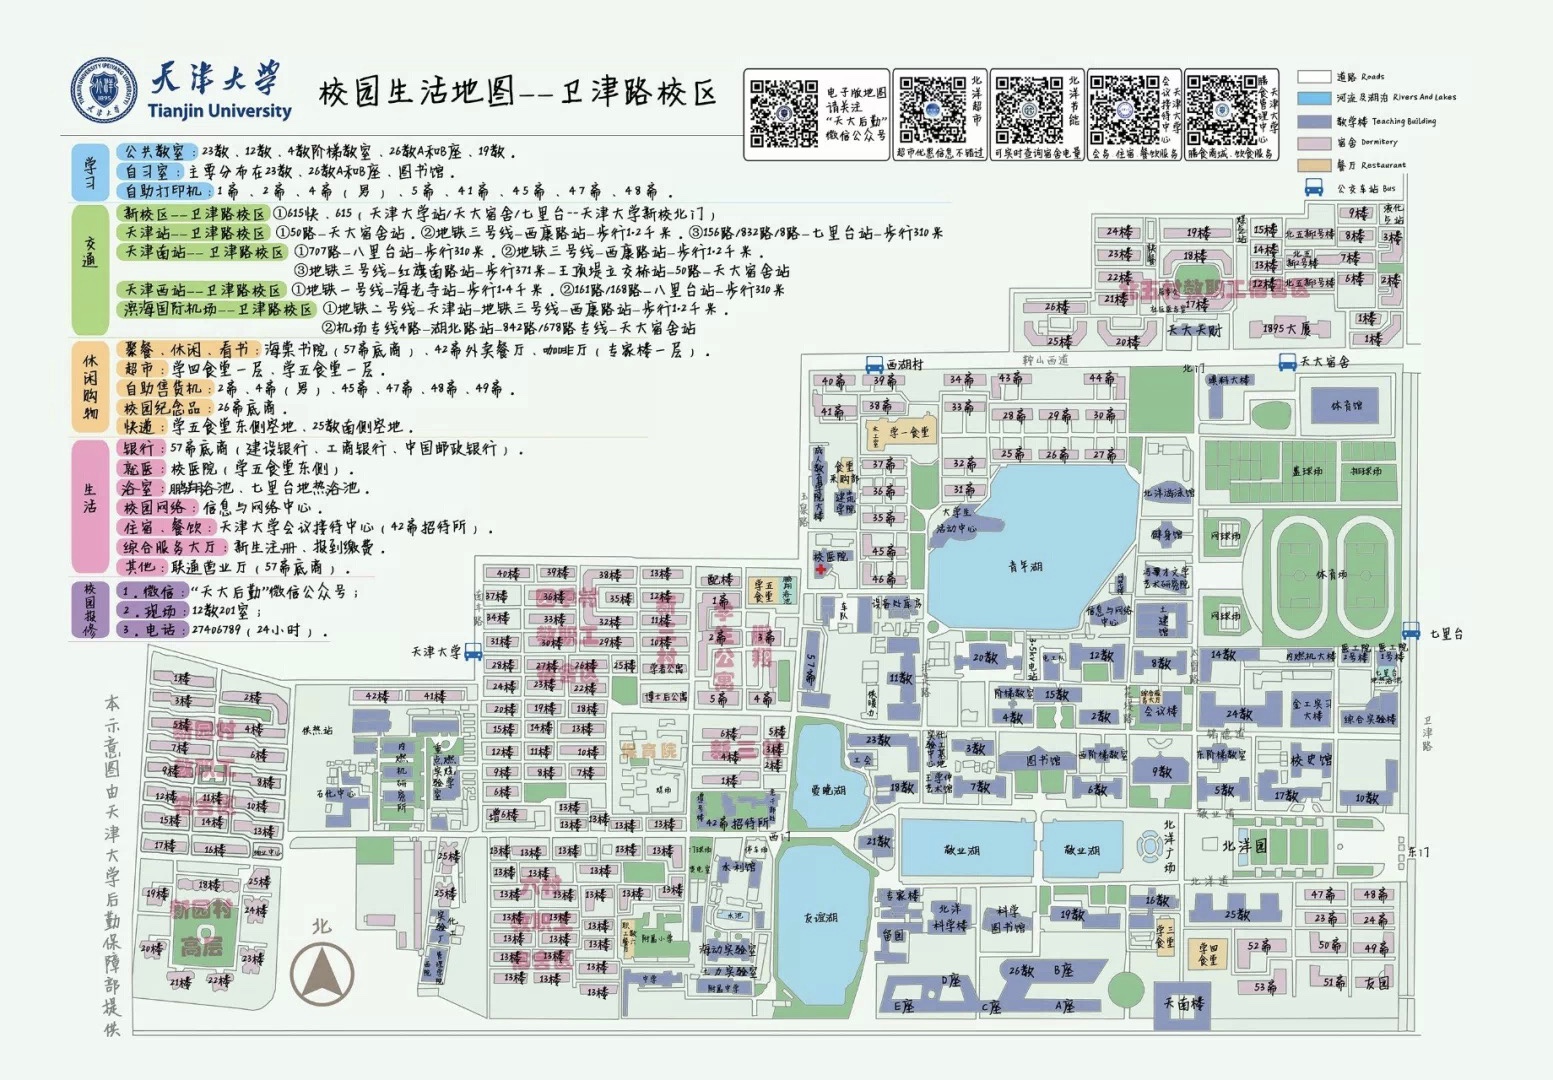 卫津路校区生活地图.jpg